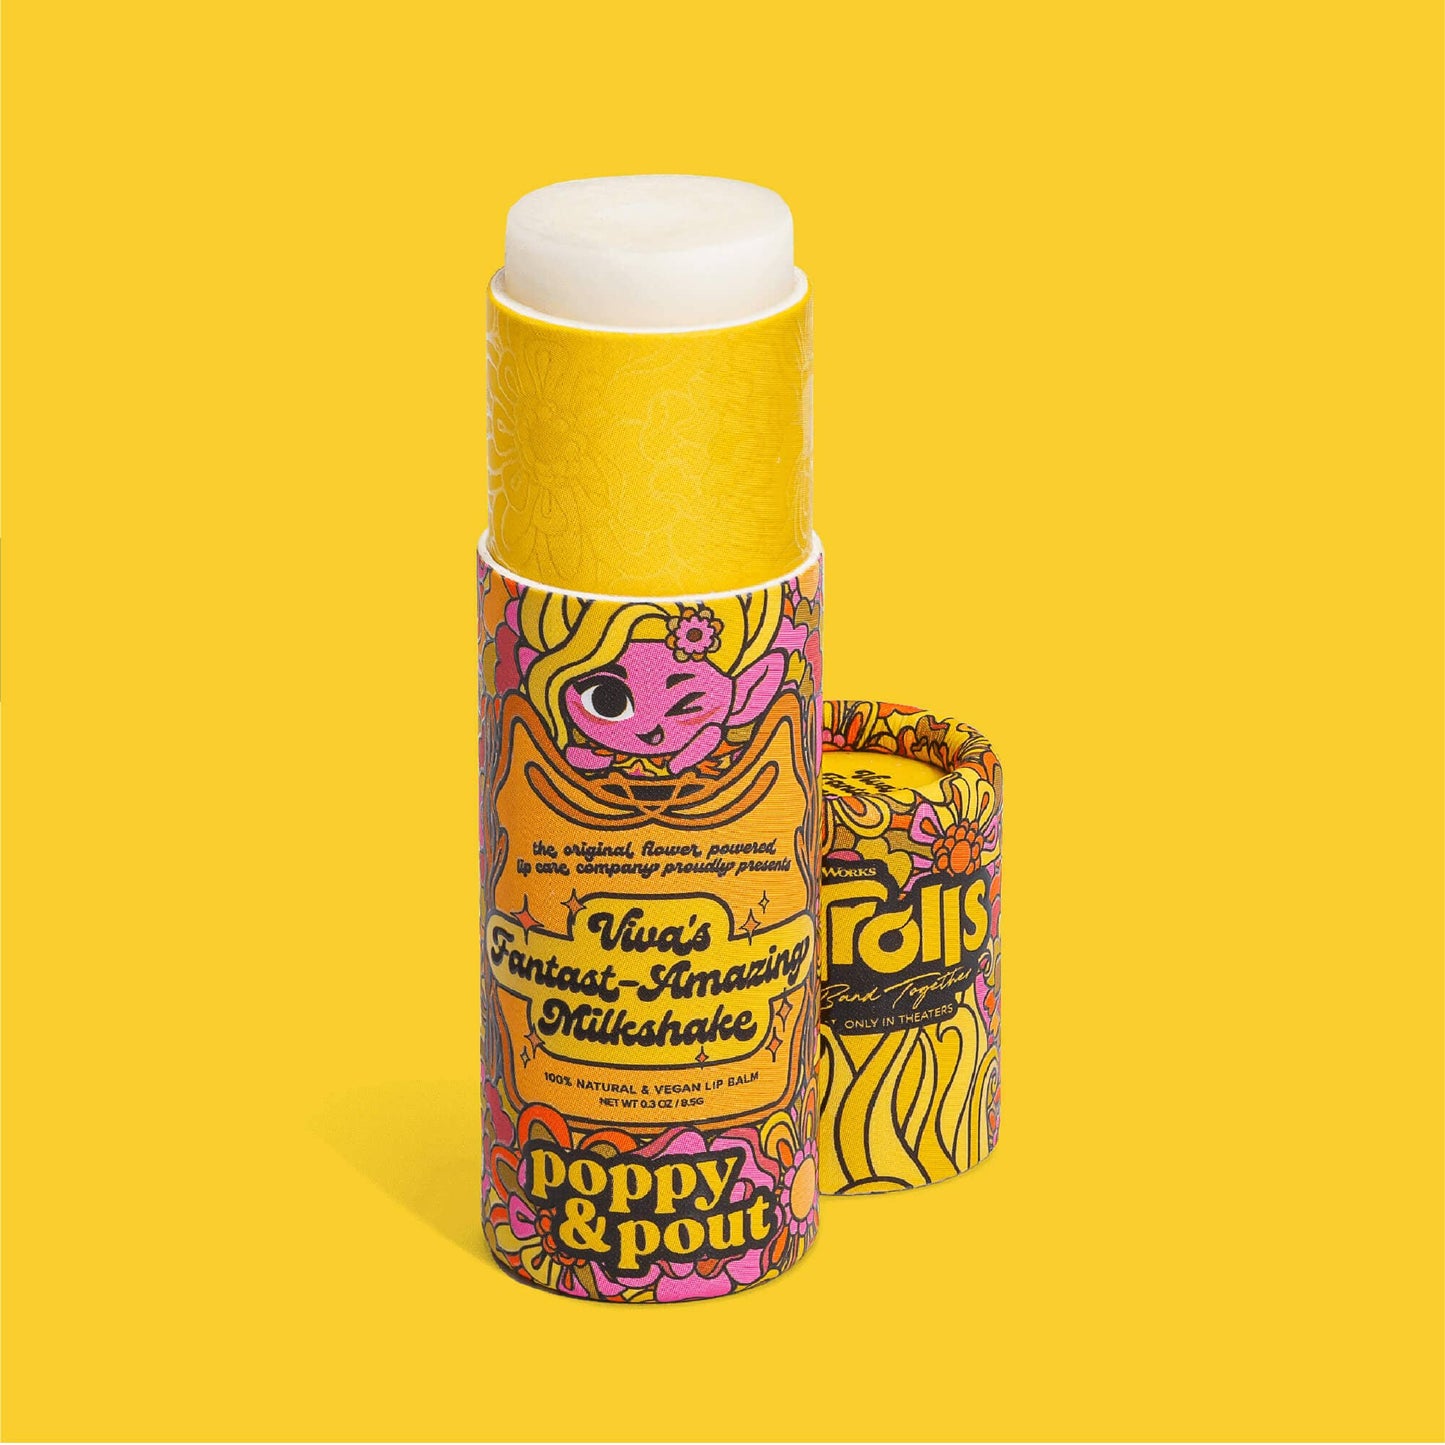 Poppy & Pout - Lip Balm, "Trolls 3" Viva's Fantast-Amazing Milkshake